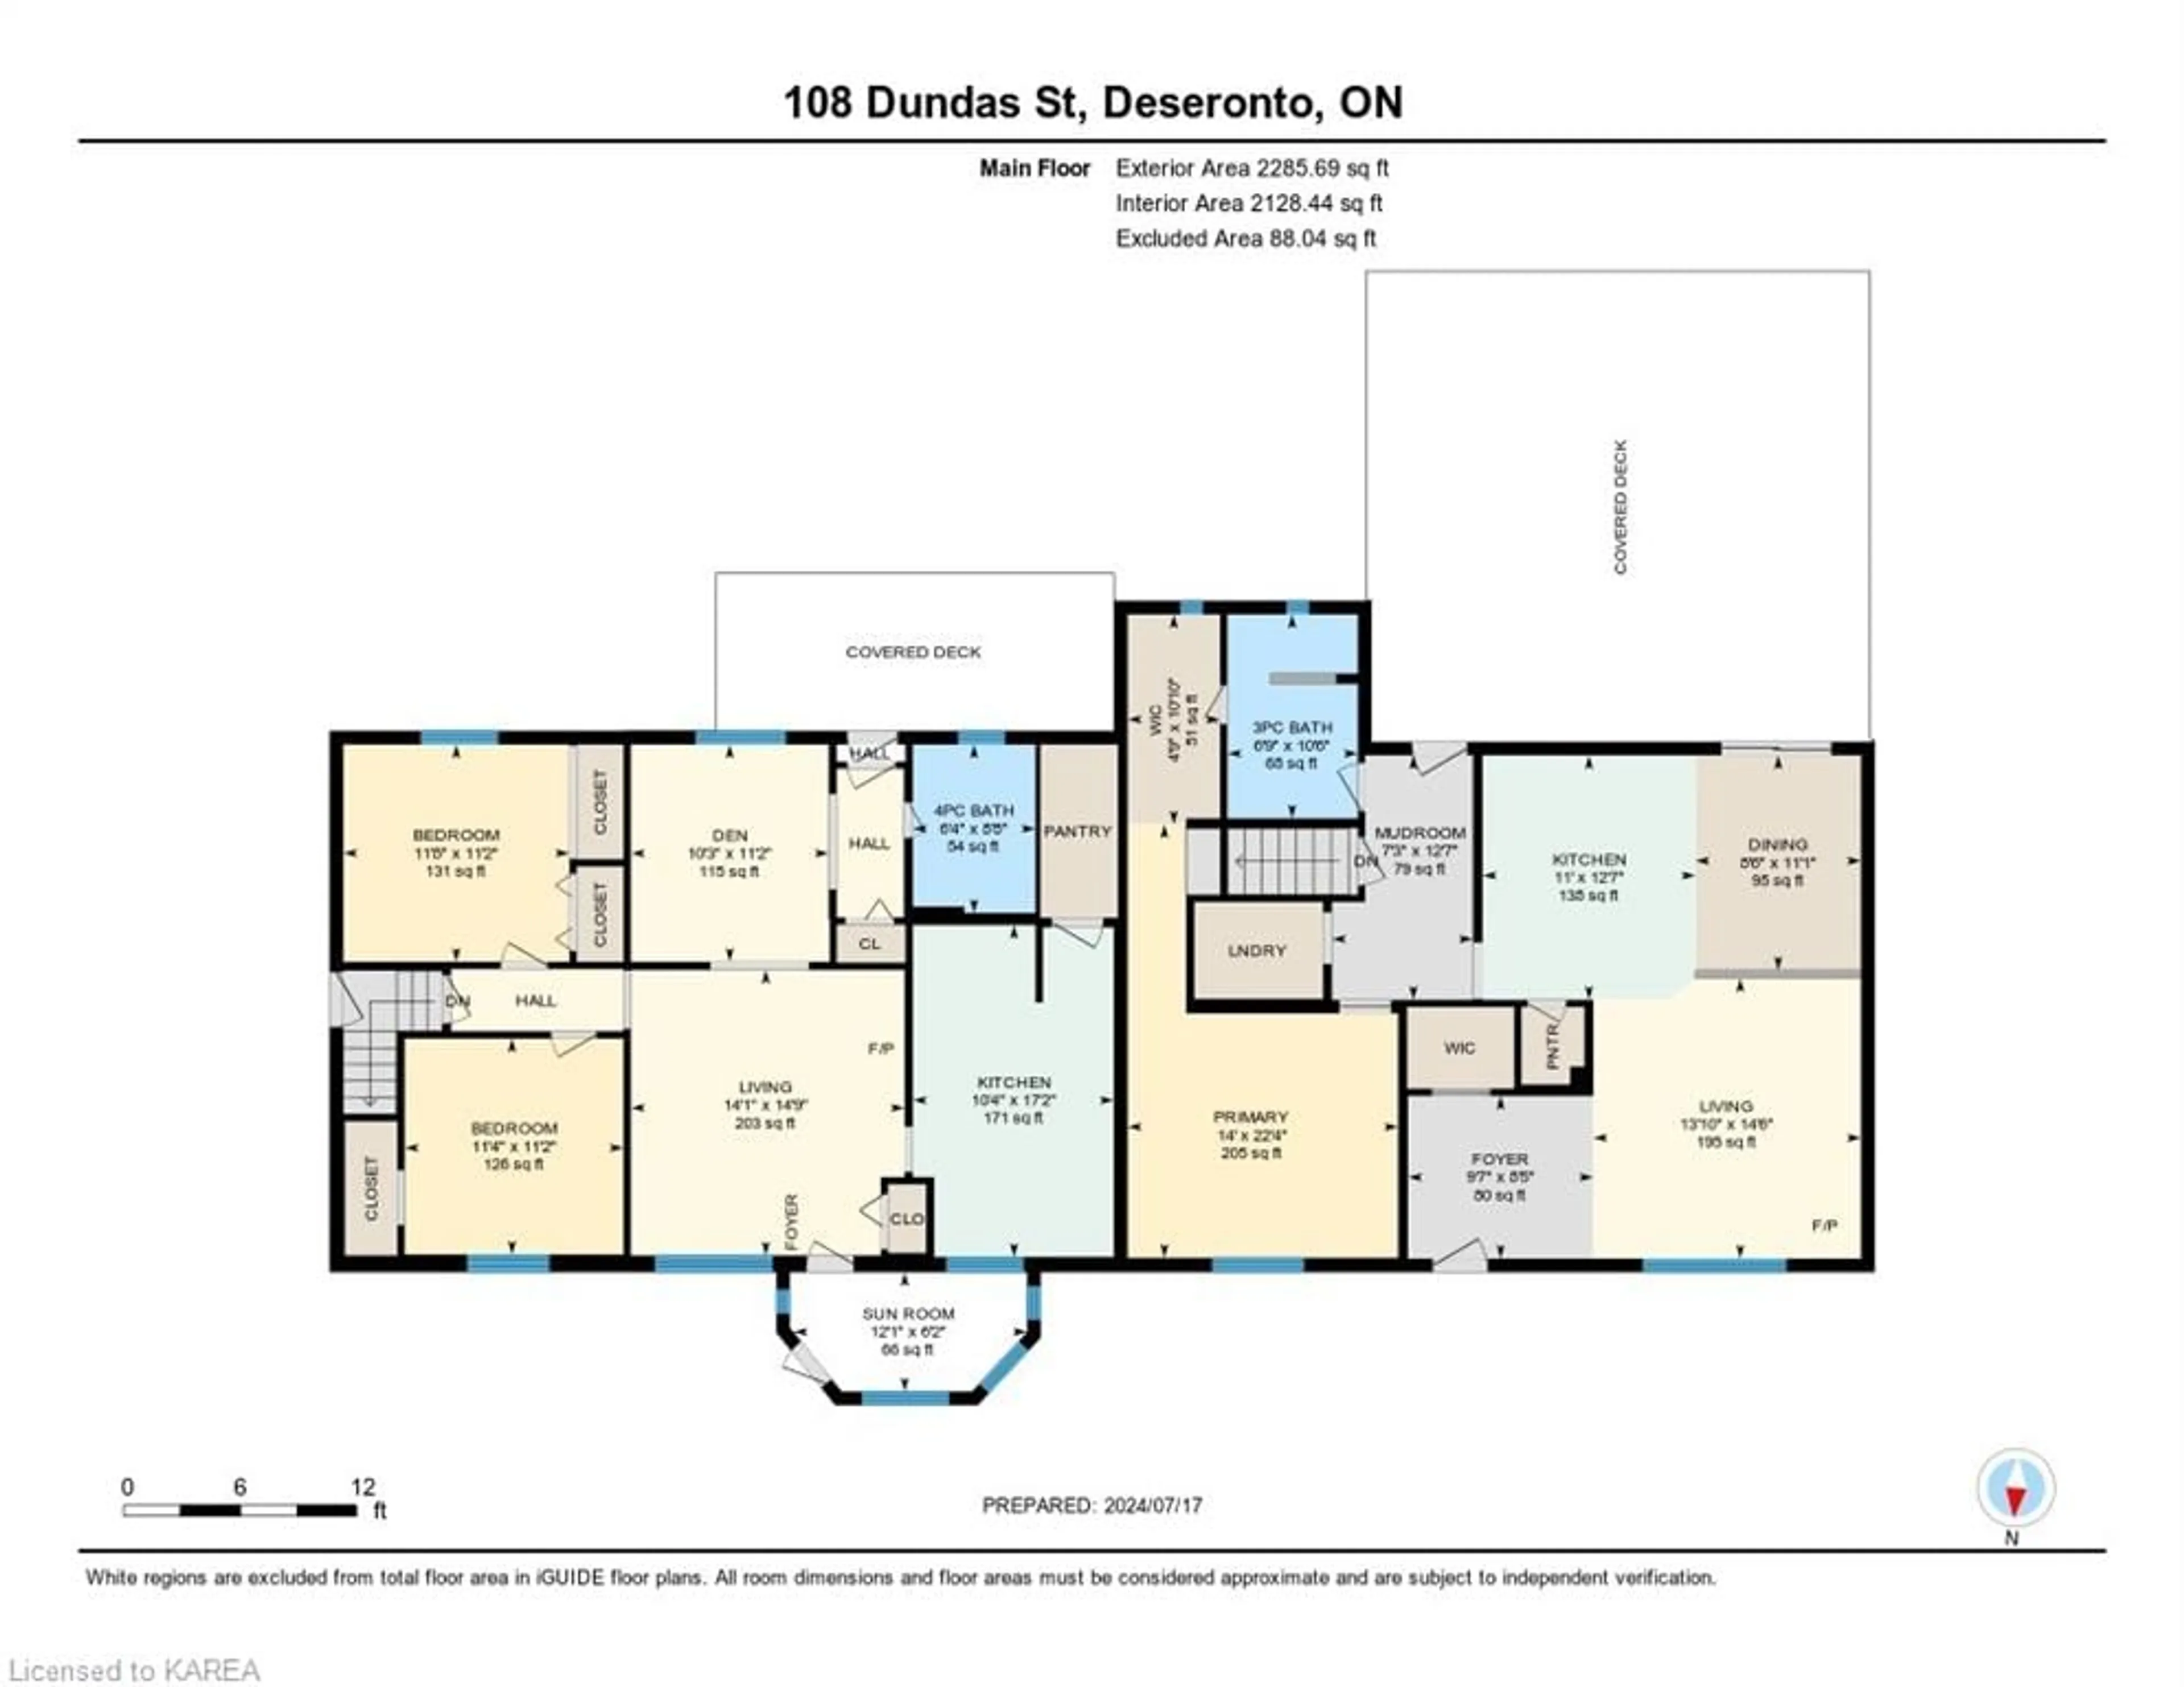 Floor plan for 108 Dundas St, Deseronto Ontario K0K 1X0